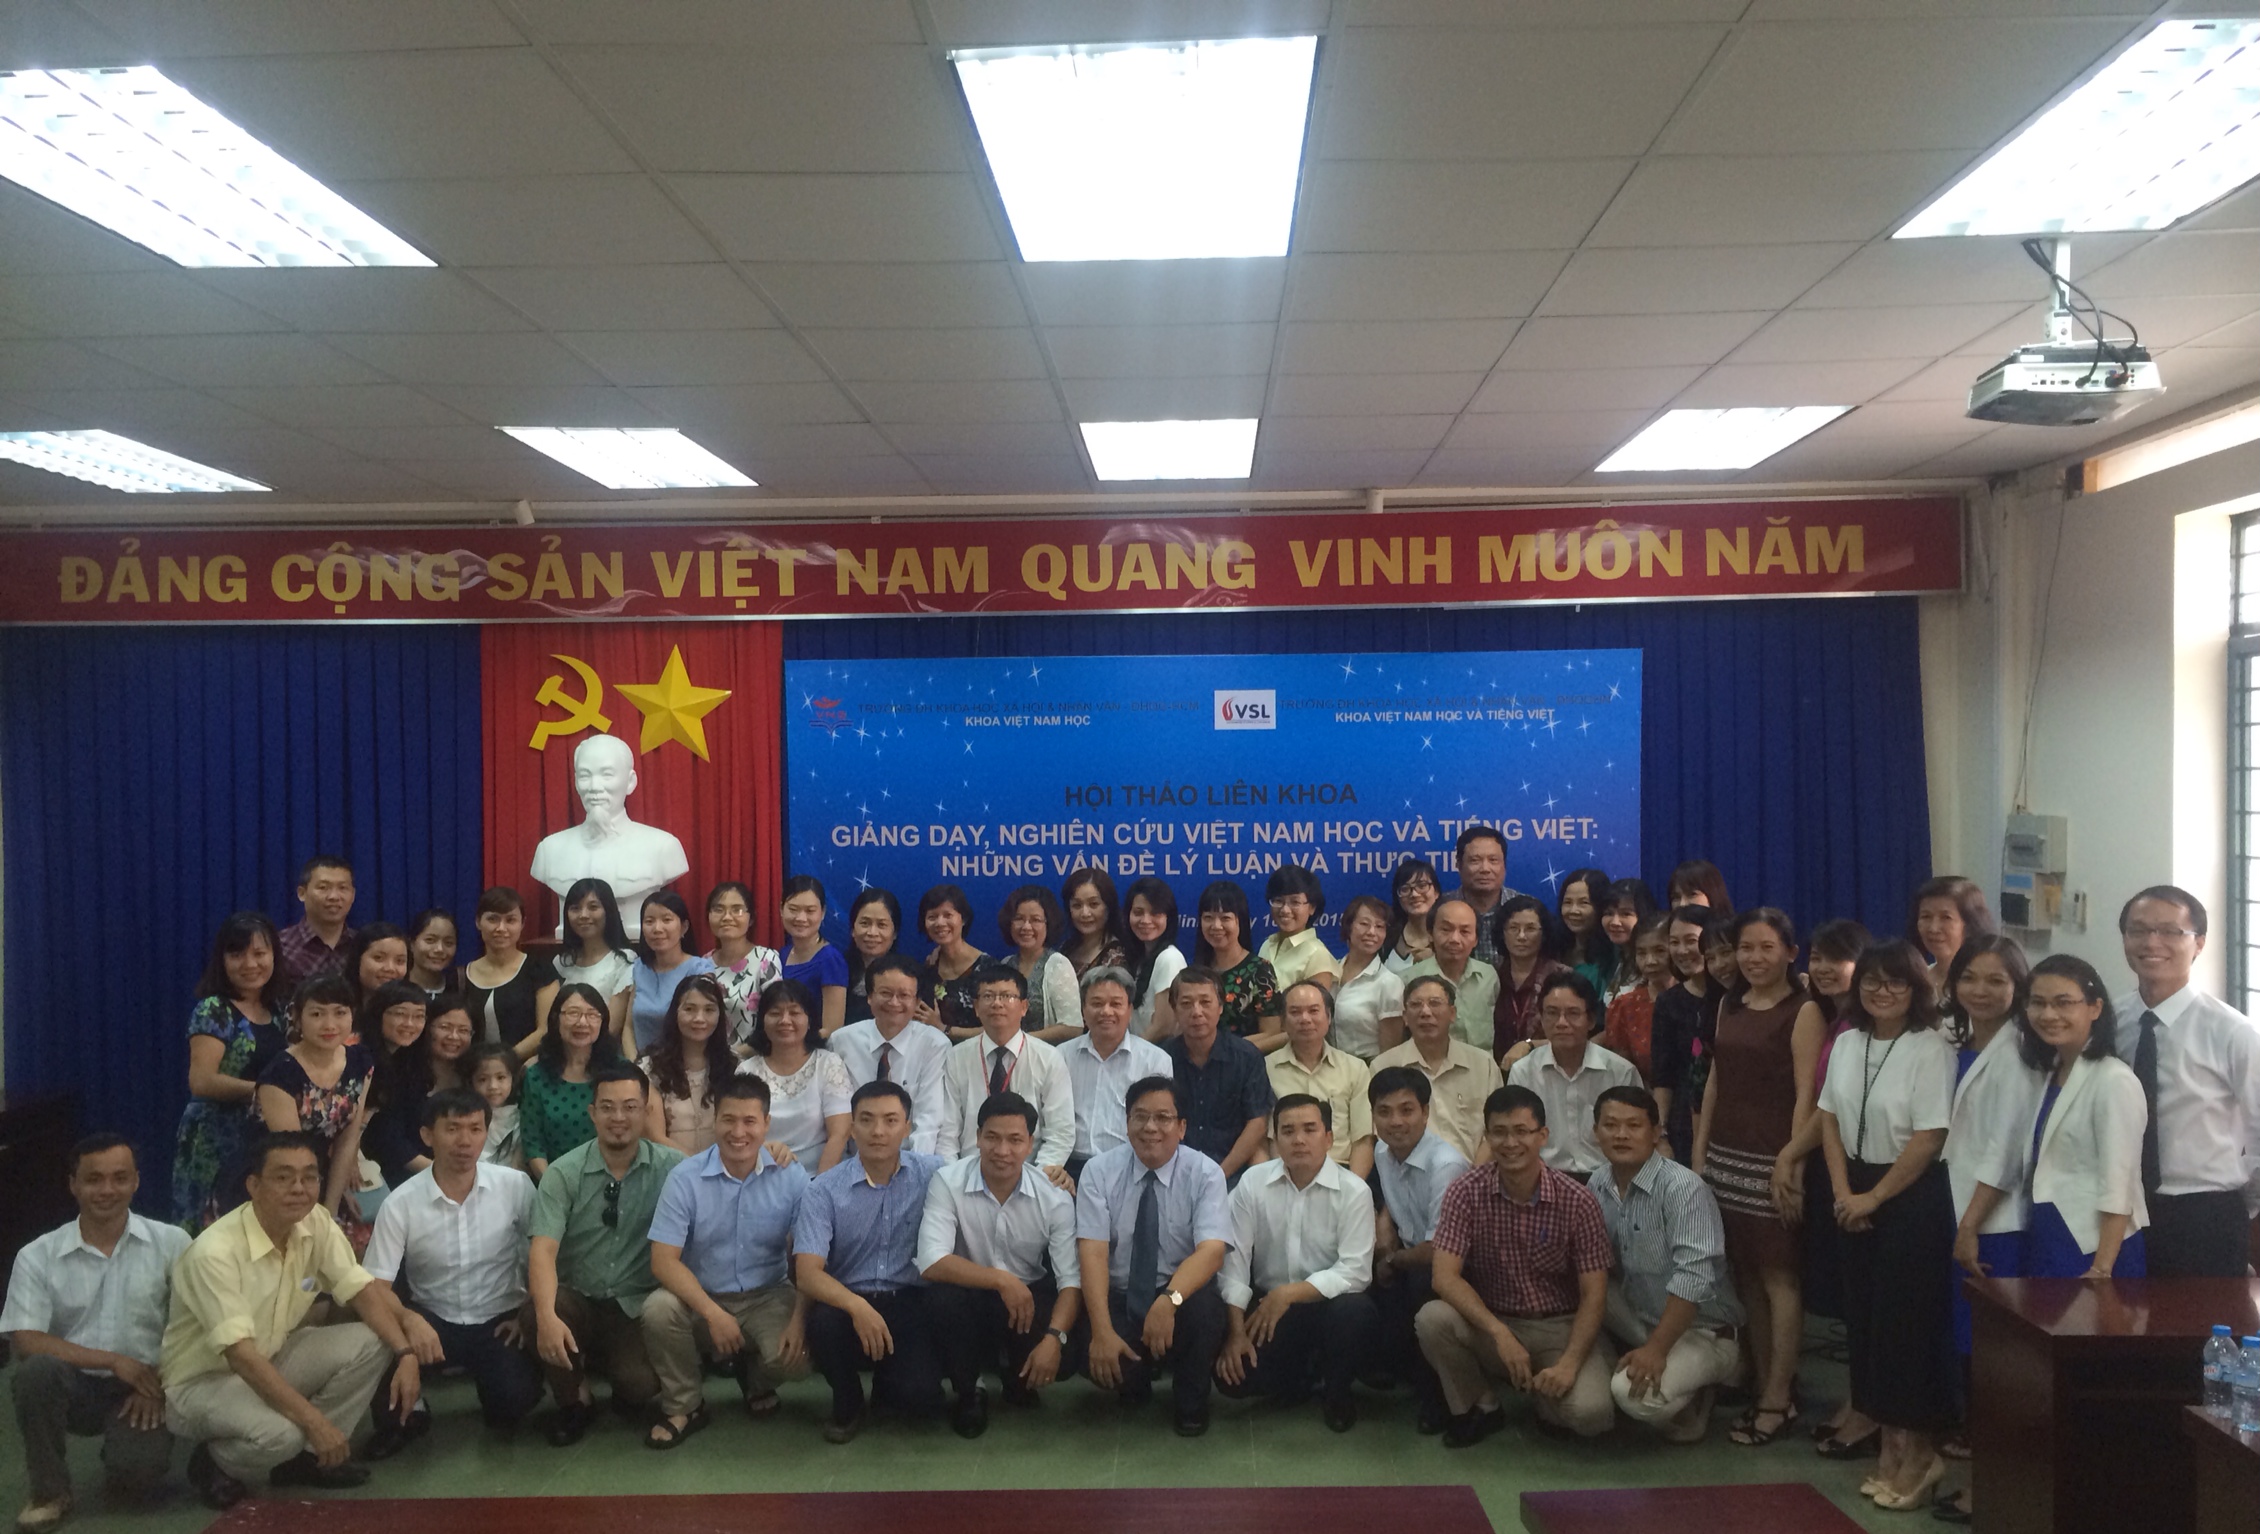 Hội thảo khoa học “Giảng dạy, nghiên cứu Việt Nam học và tiếng Việt: Những vấn đề lý luận và thực tiễn” năm 2015